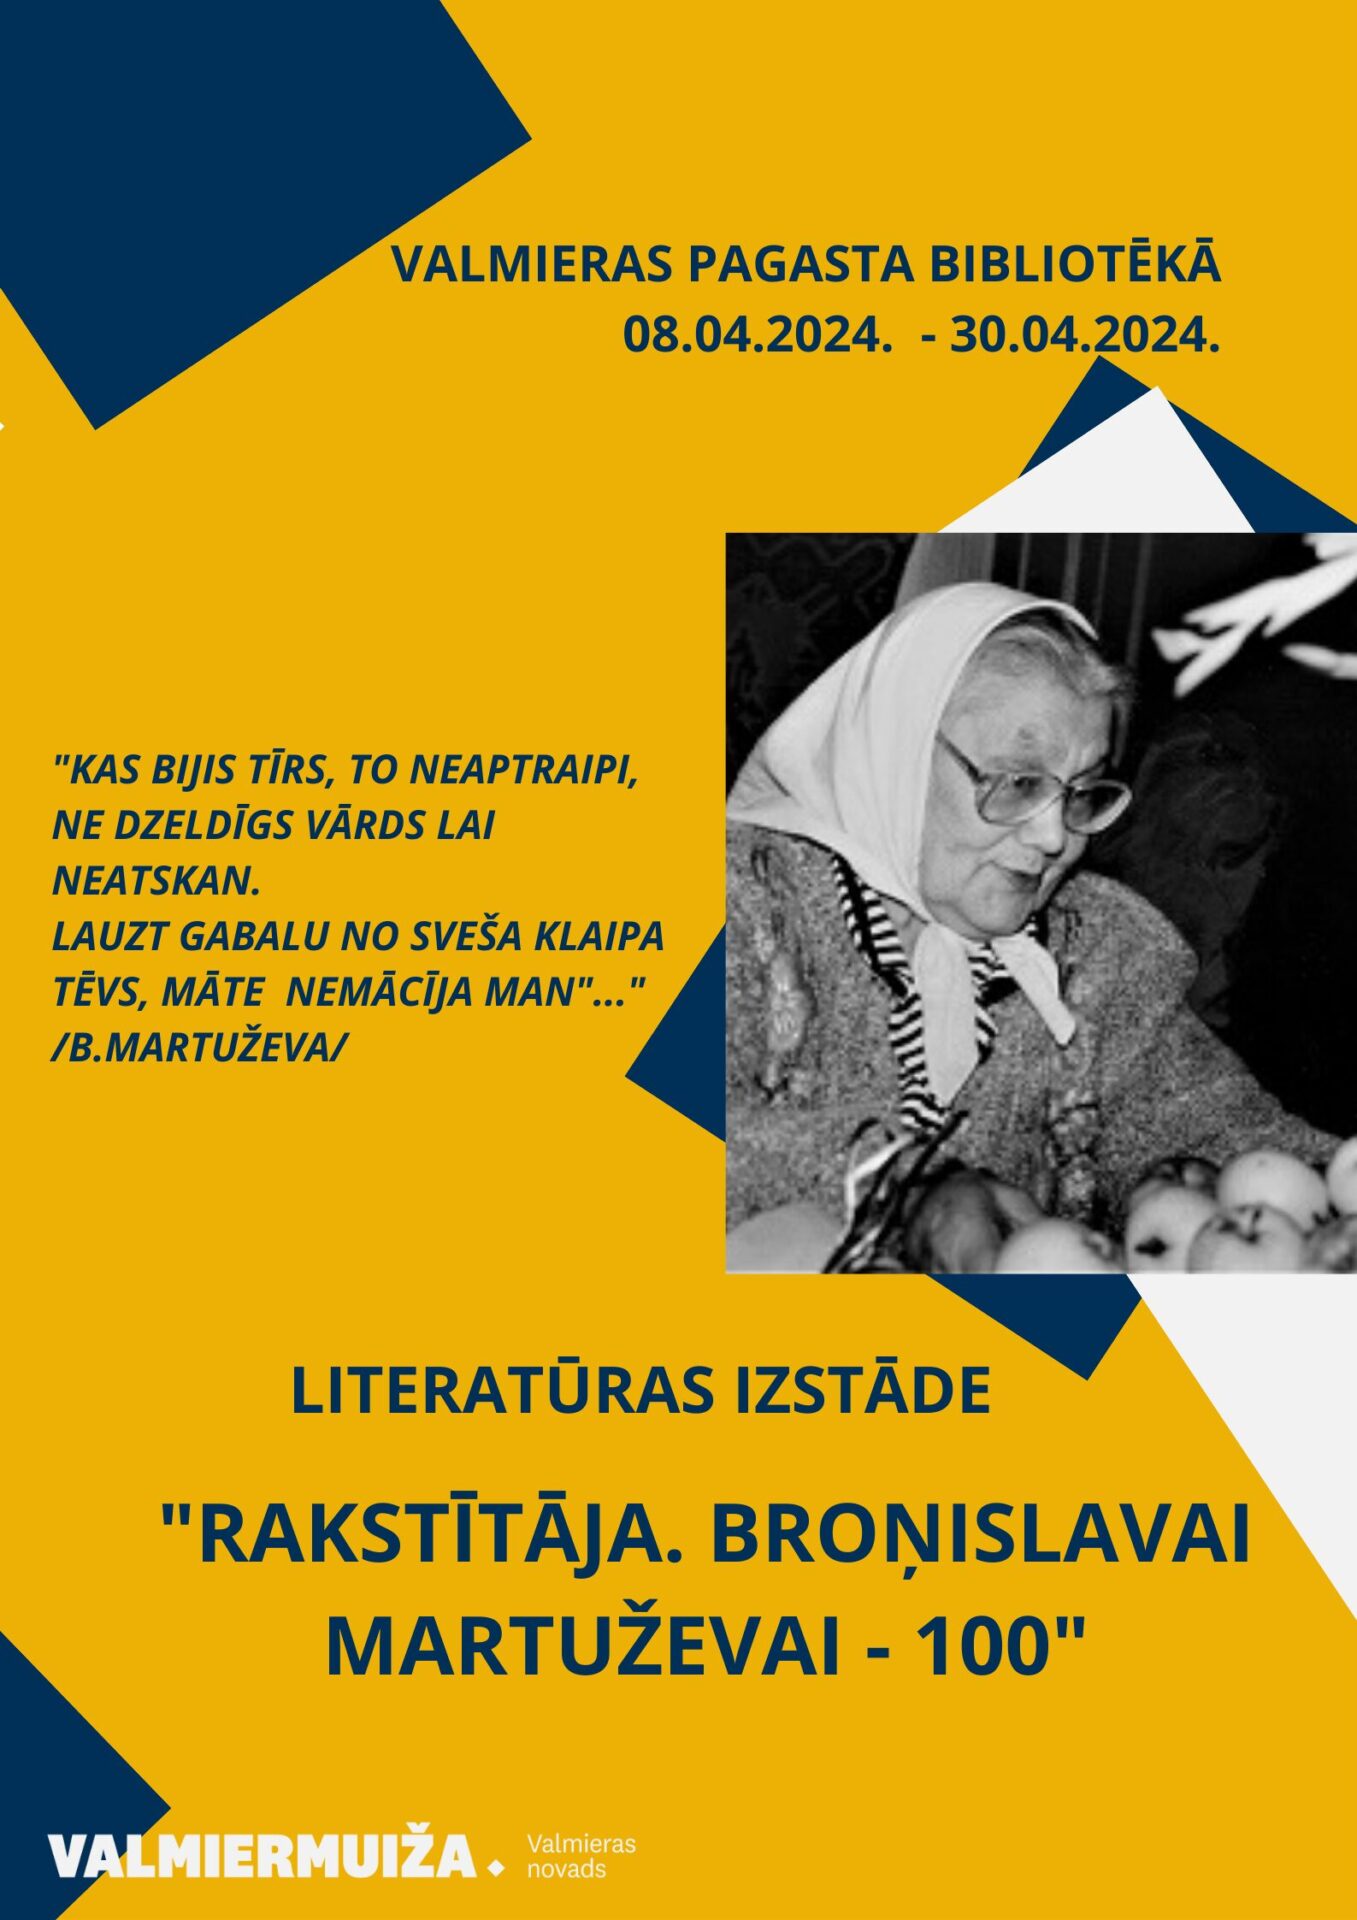 Valmieras pagasta bibliotēkā aplūkojama dzejnieces, nacionālās pretošanās kustības dalībnieces, folkloras teicējas un dziesminieces Broņislavas Martuževas simtgadei veltīta literārā izstāde